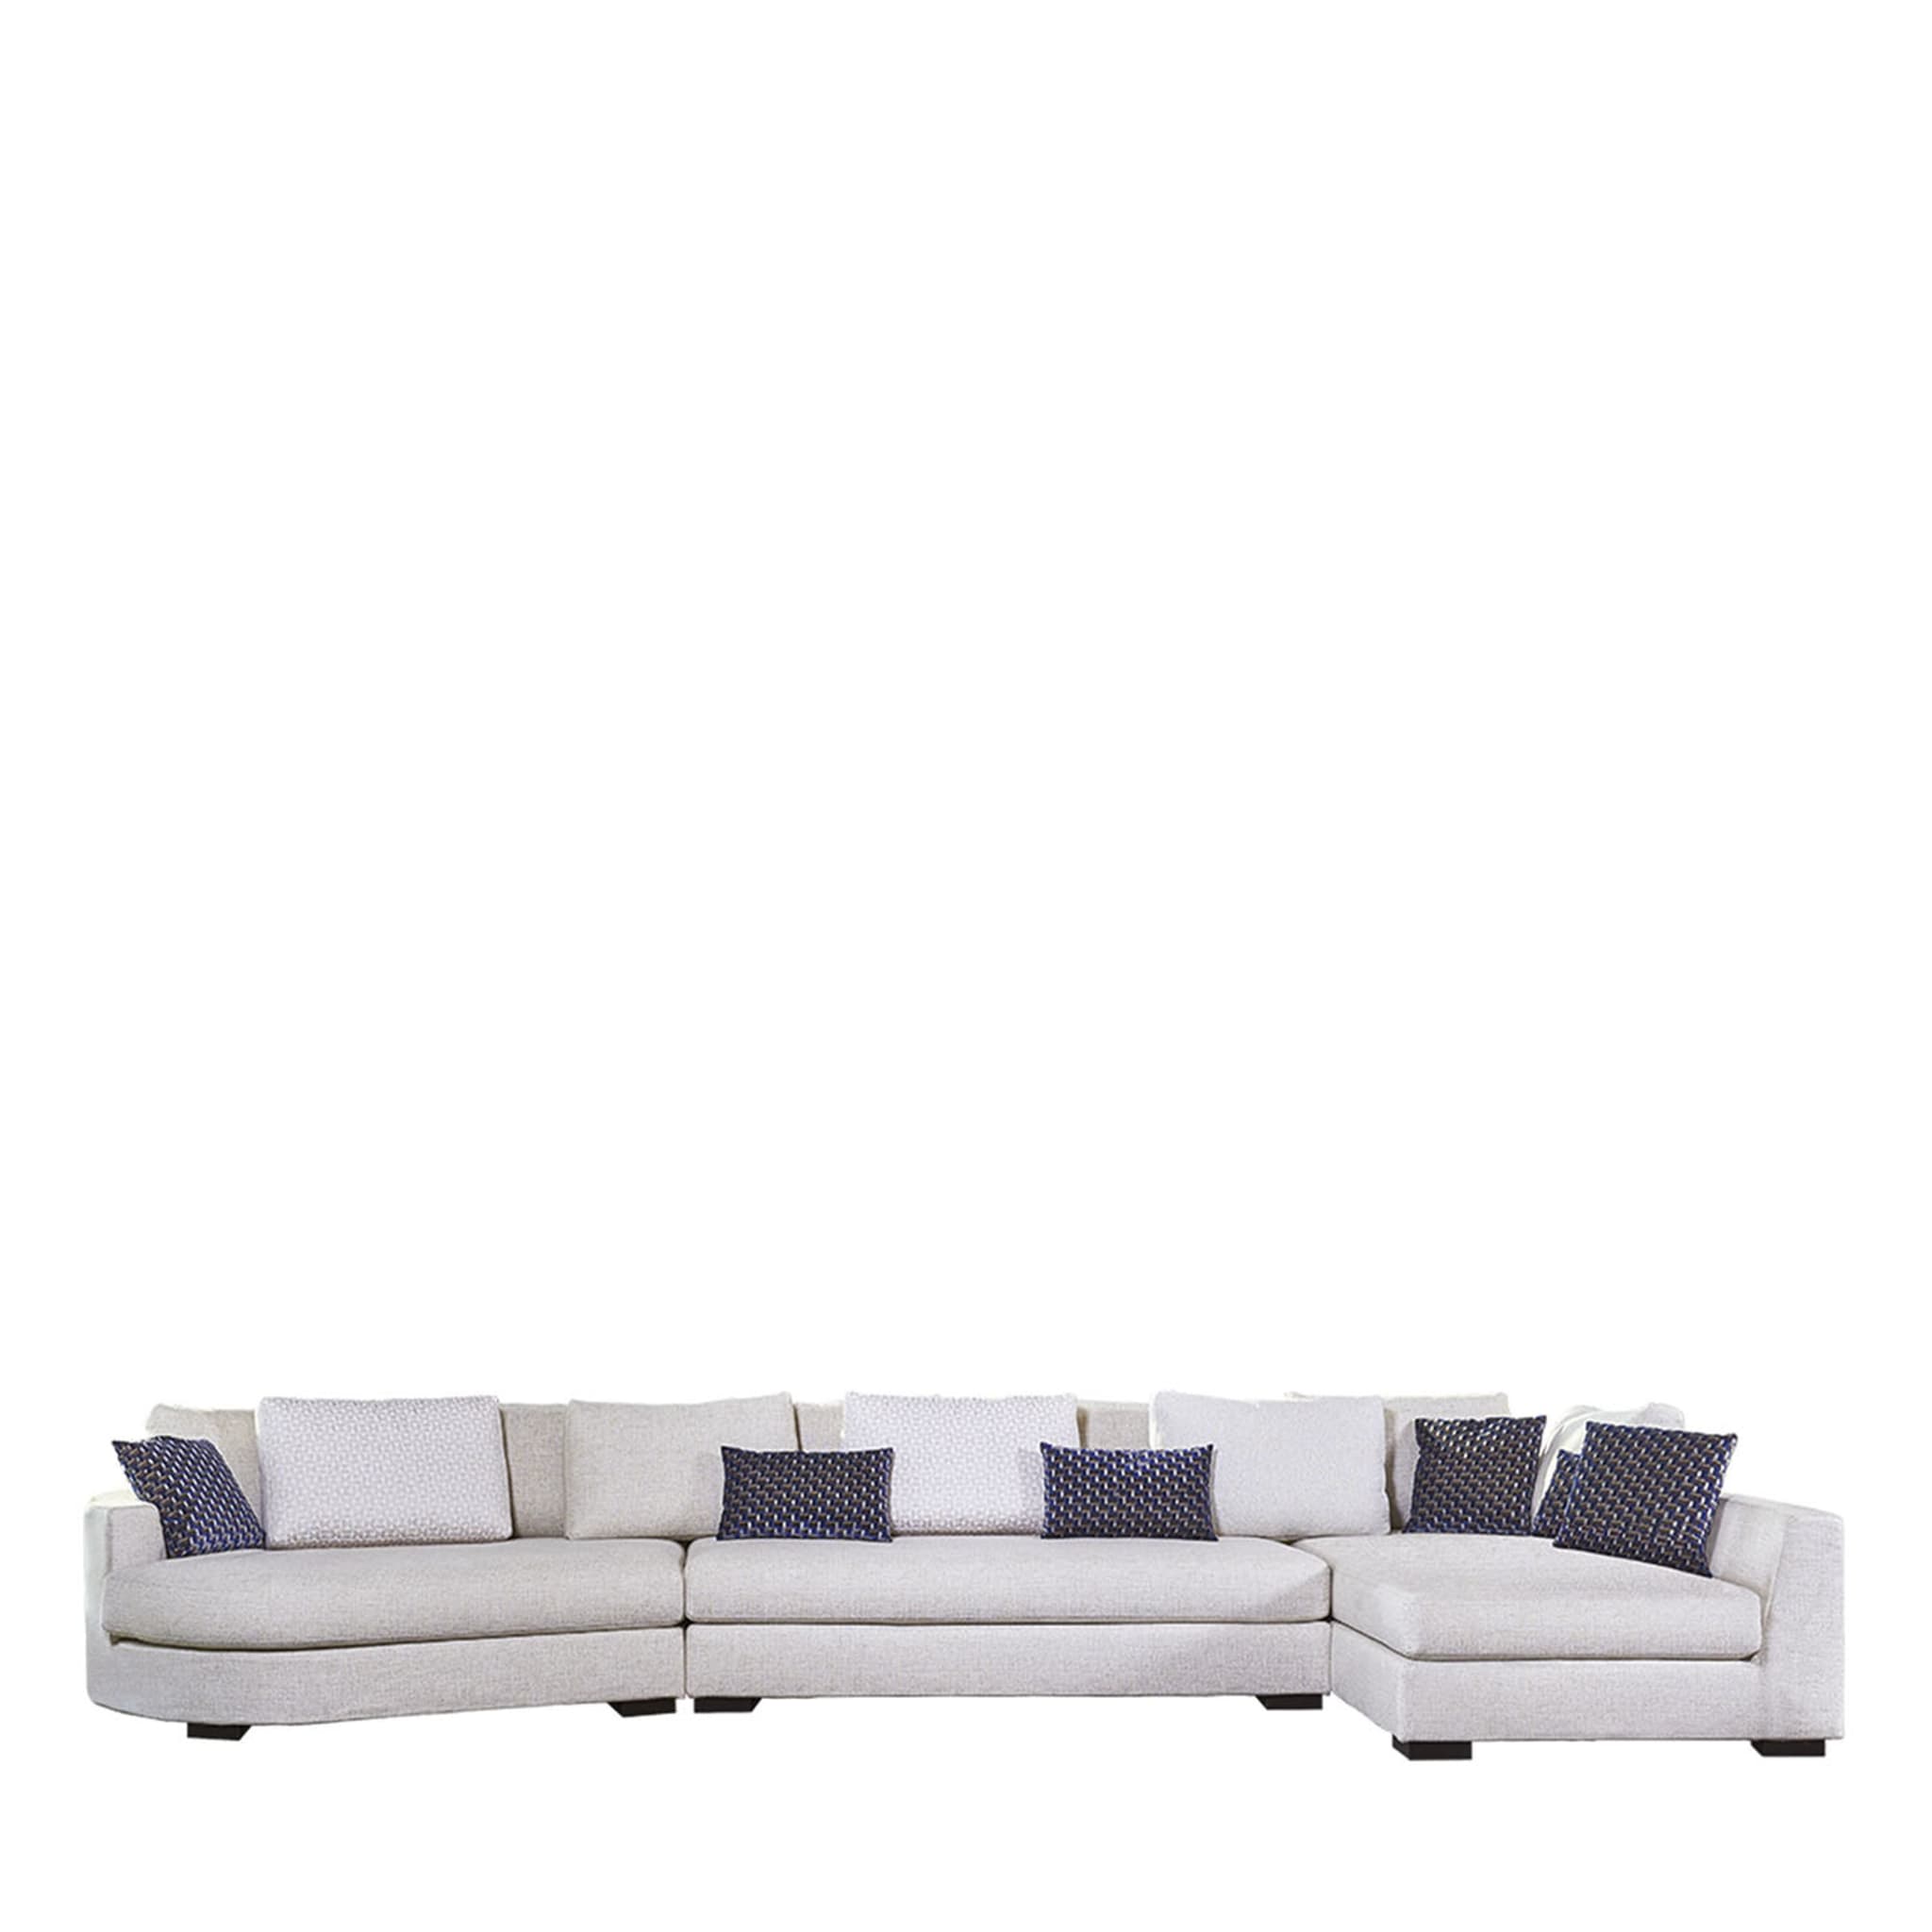 Hochwertiges Lounge-Sofa - Hauptansicht